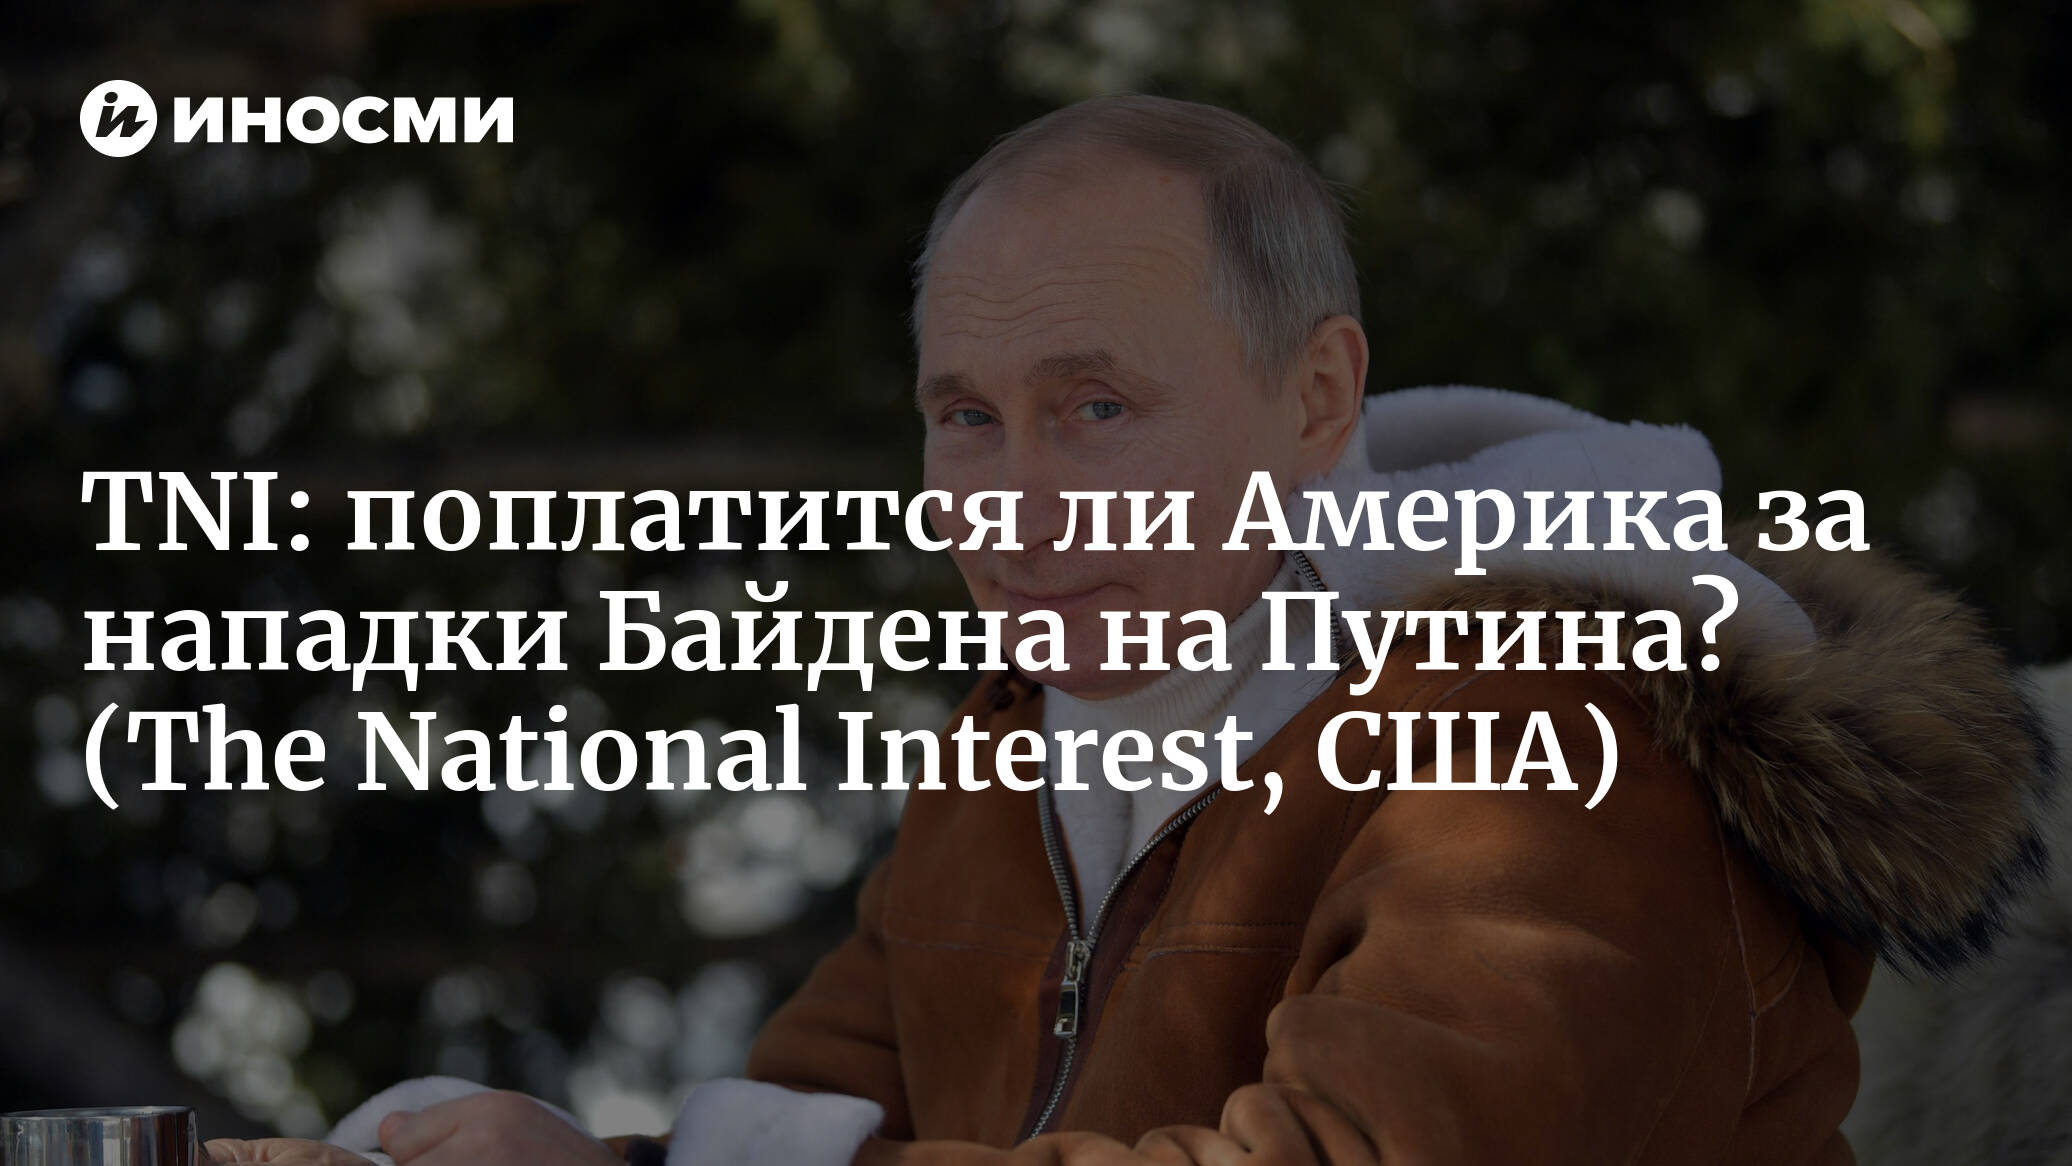 The National Interest (США): поплатится ли Америка за нападки Байдена на  Путина? (The National Interest, США) | 07.10.2022, ИноСМИ